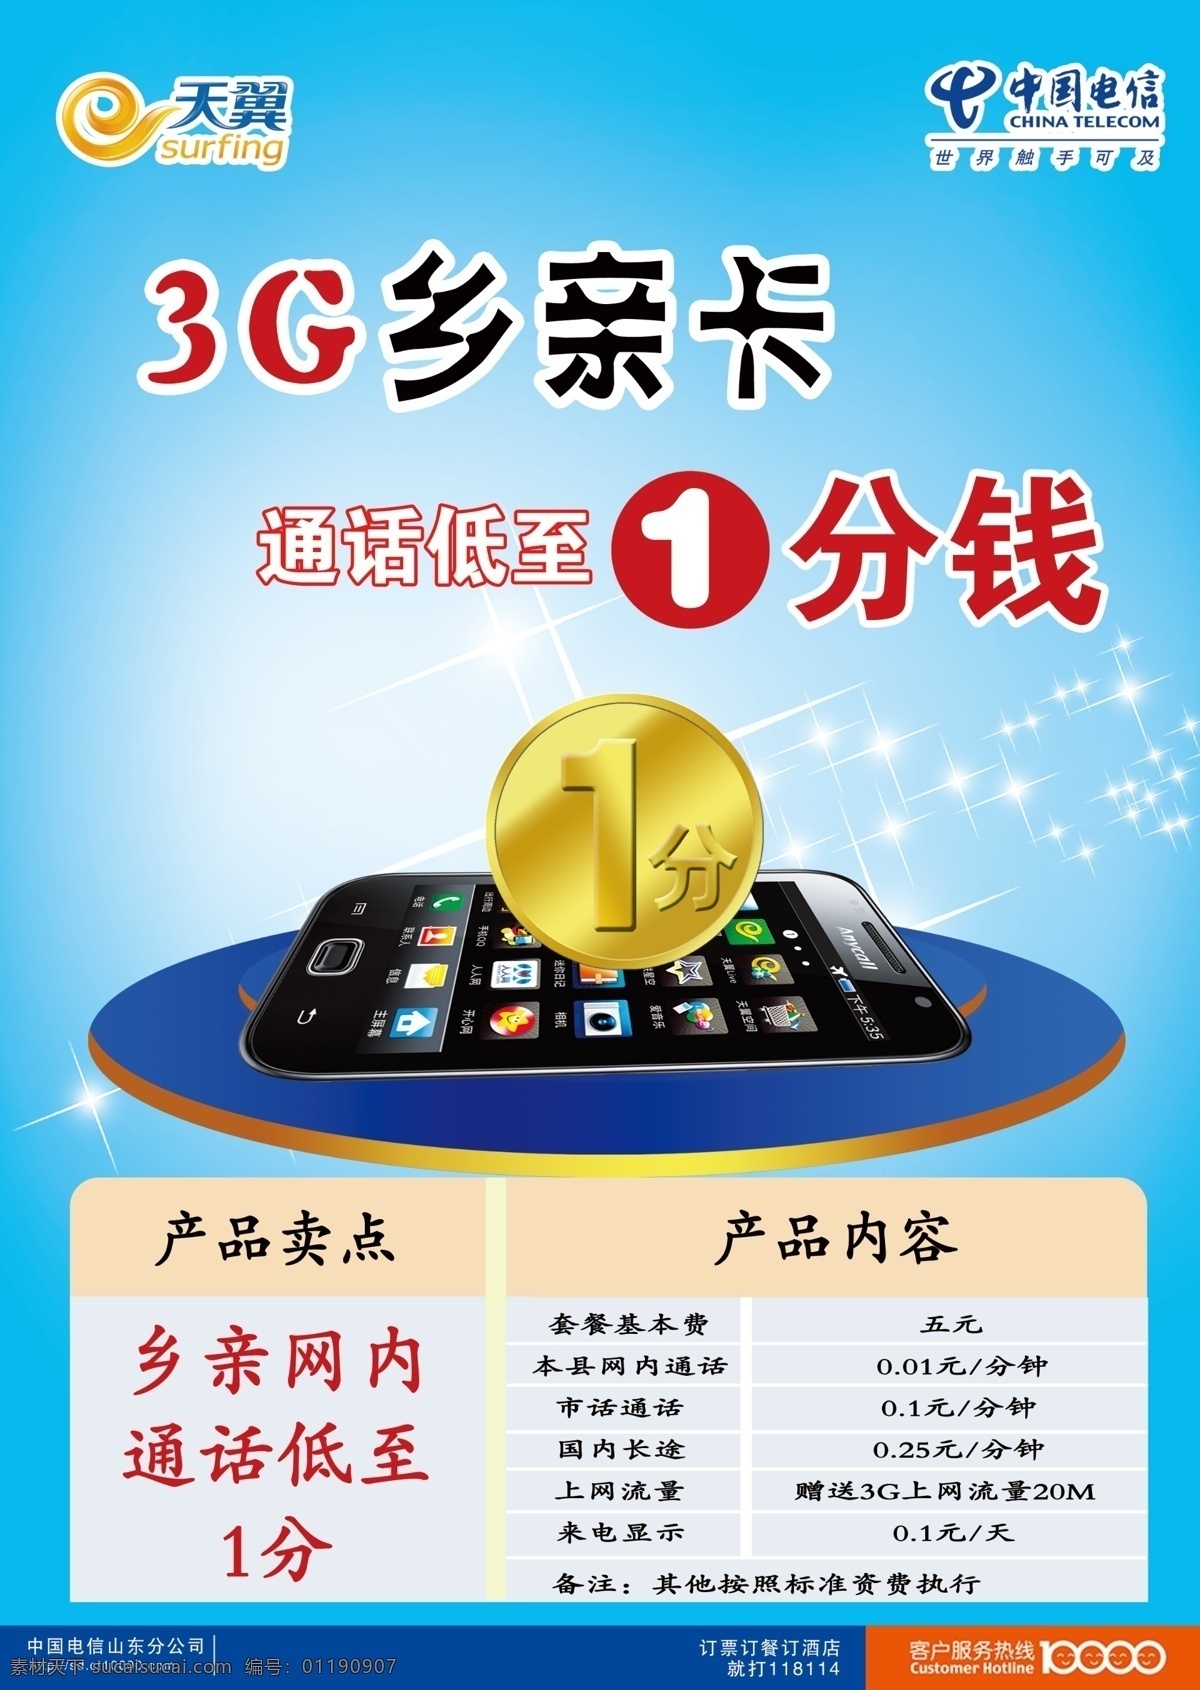 中国电信 3g 乡亲卡 1分钱 手机 原创模板 广告设计模板 源文件